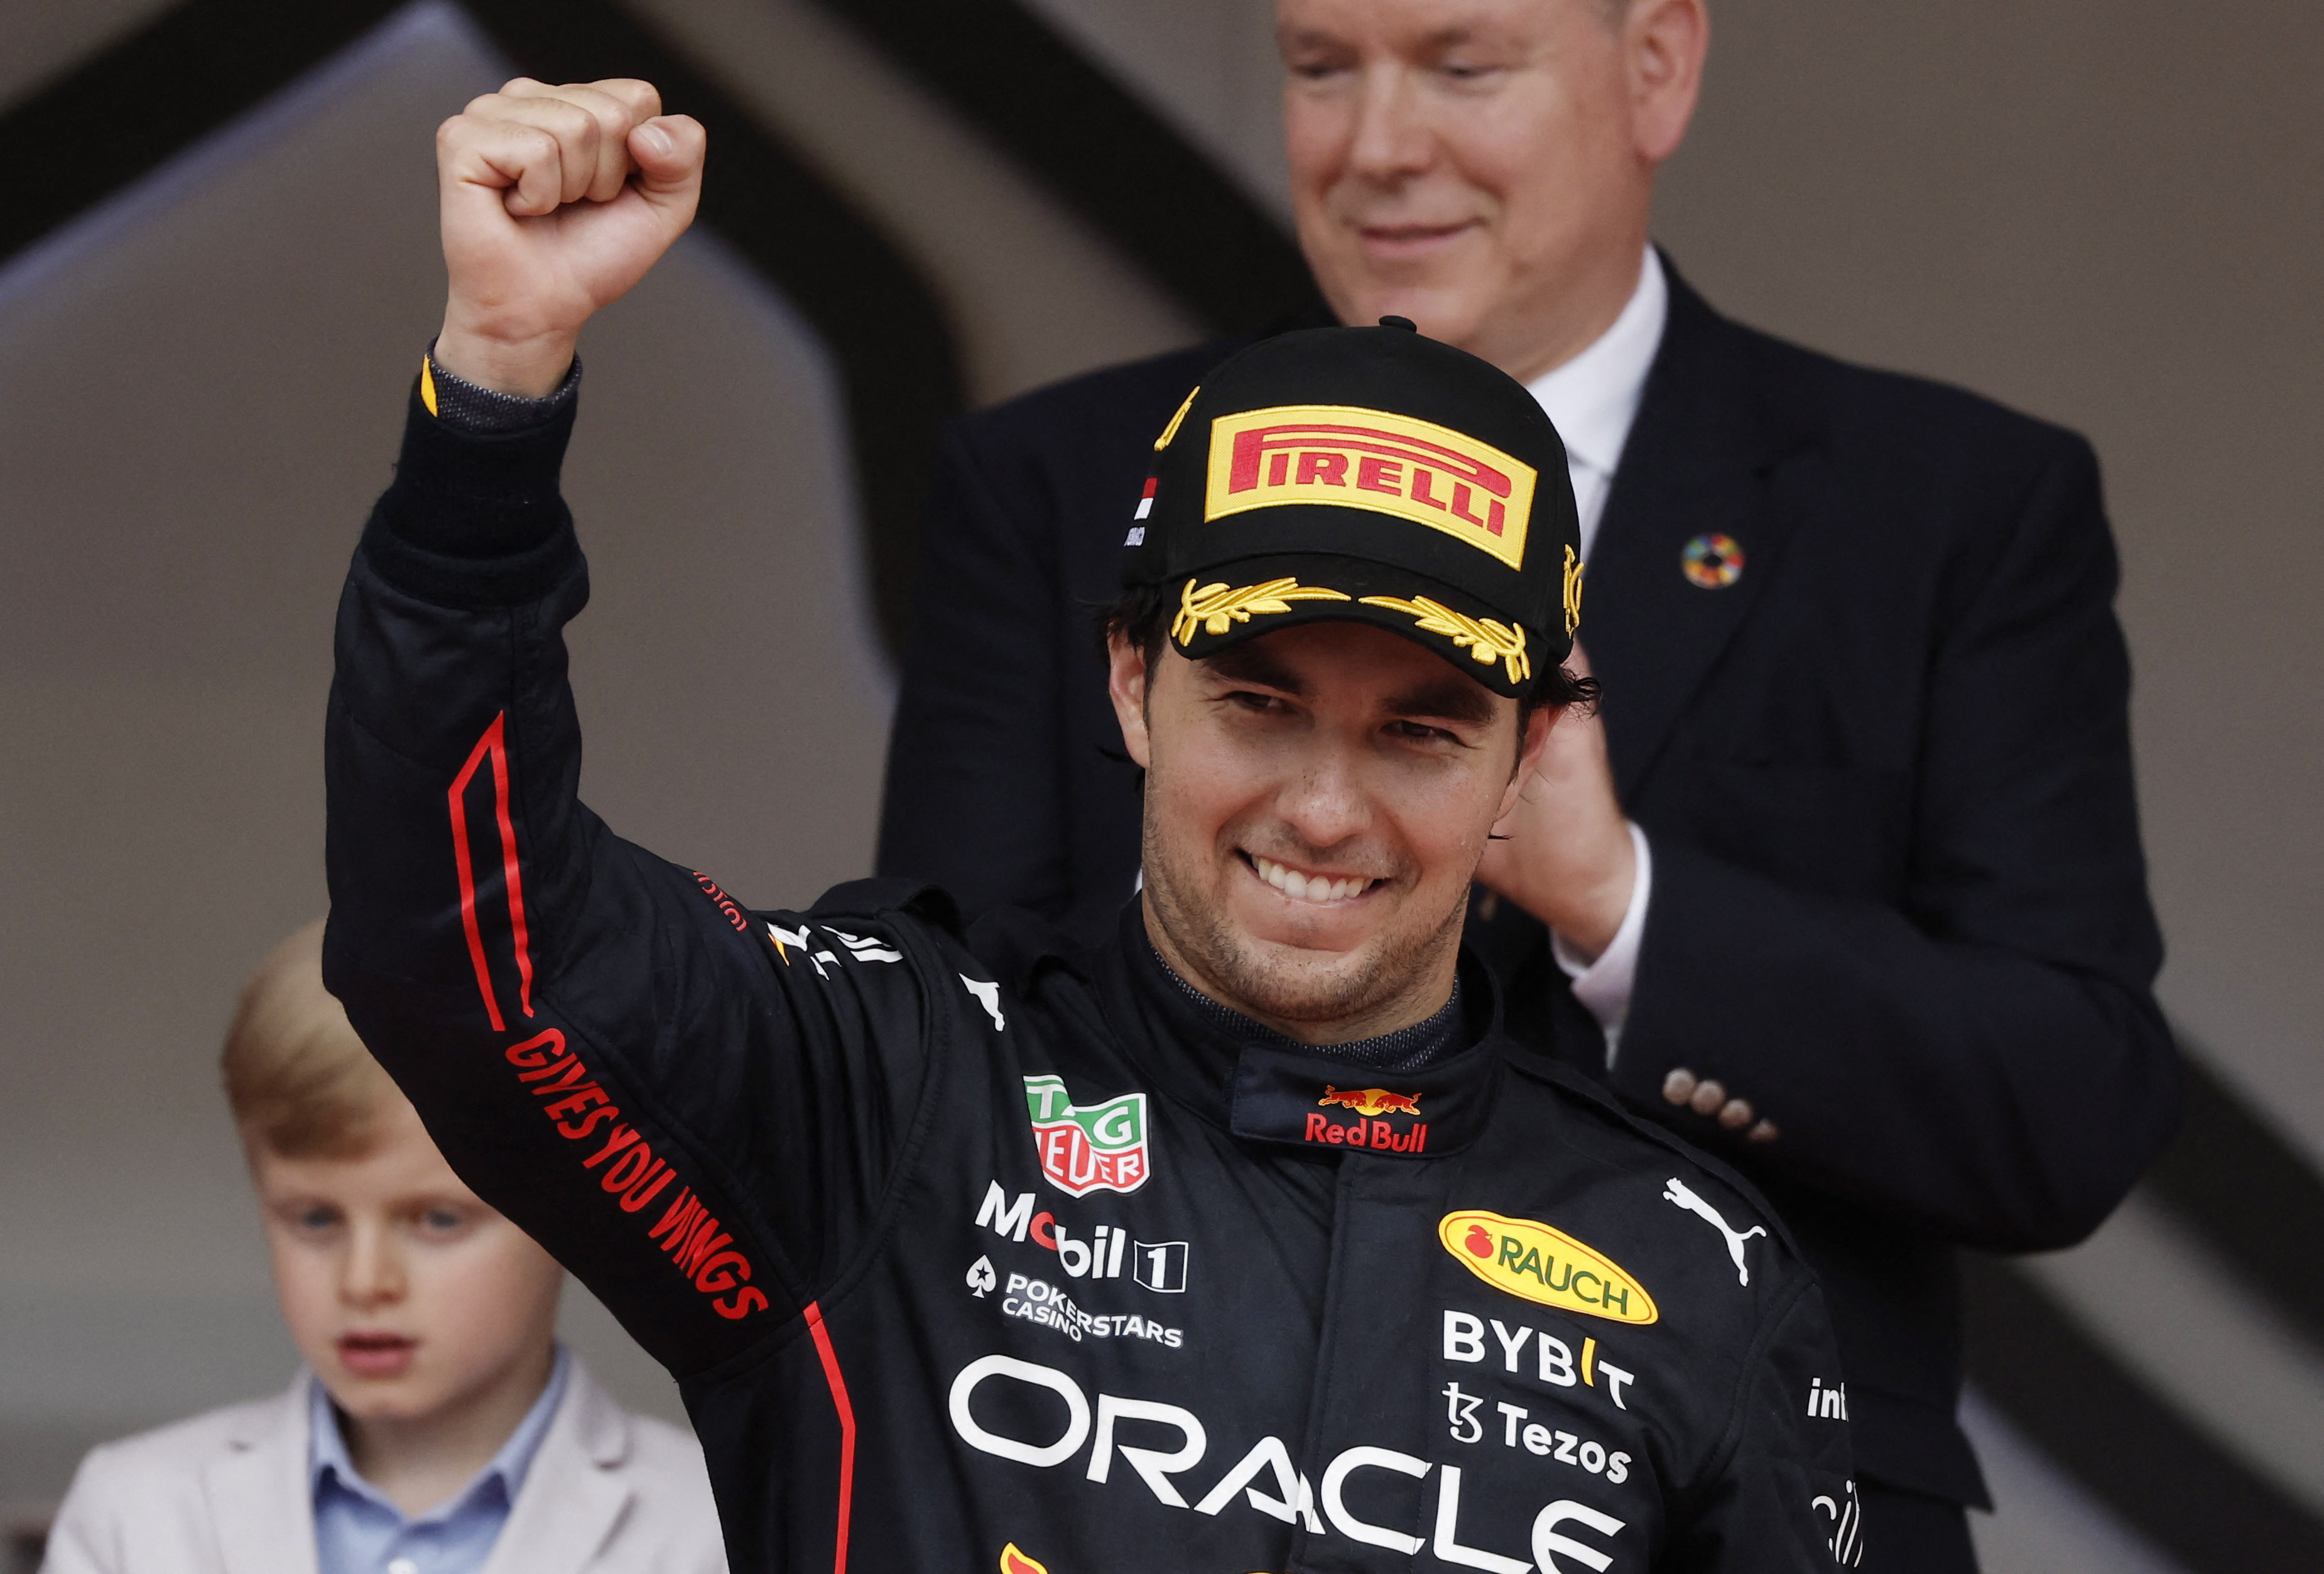 Tras la victoria de Checo Pérez en el GP de Mónaco, el mexicano quedó a 15 puntos de Verstappen, pero dos abandonos y problemas con las actualizaciones lo relegaron a 85 unidades (Foto: REUTERS/Benoit Tessier)